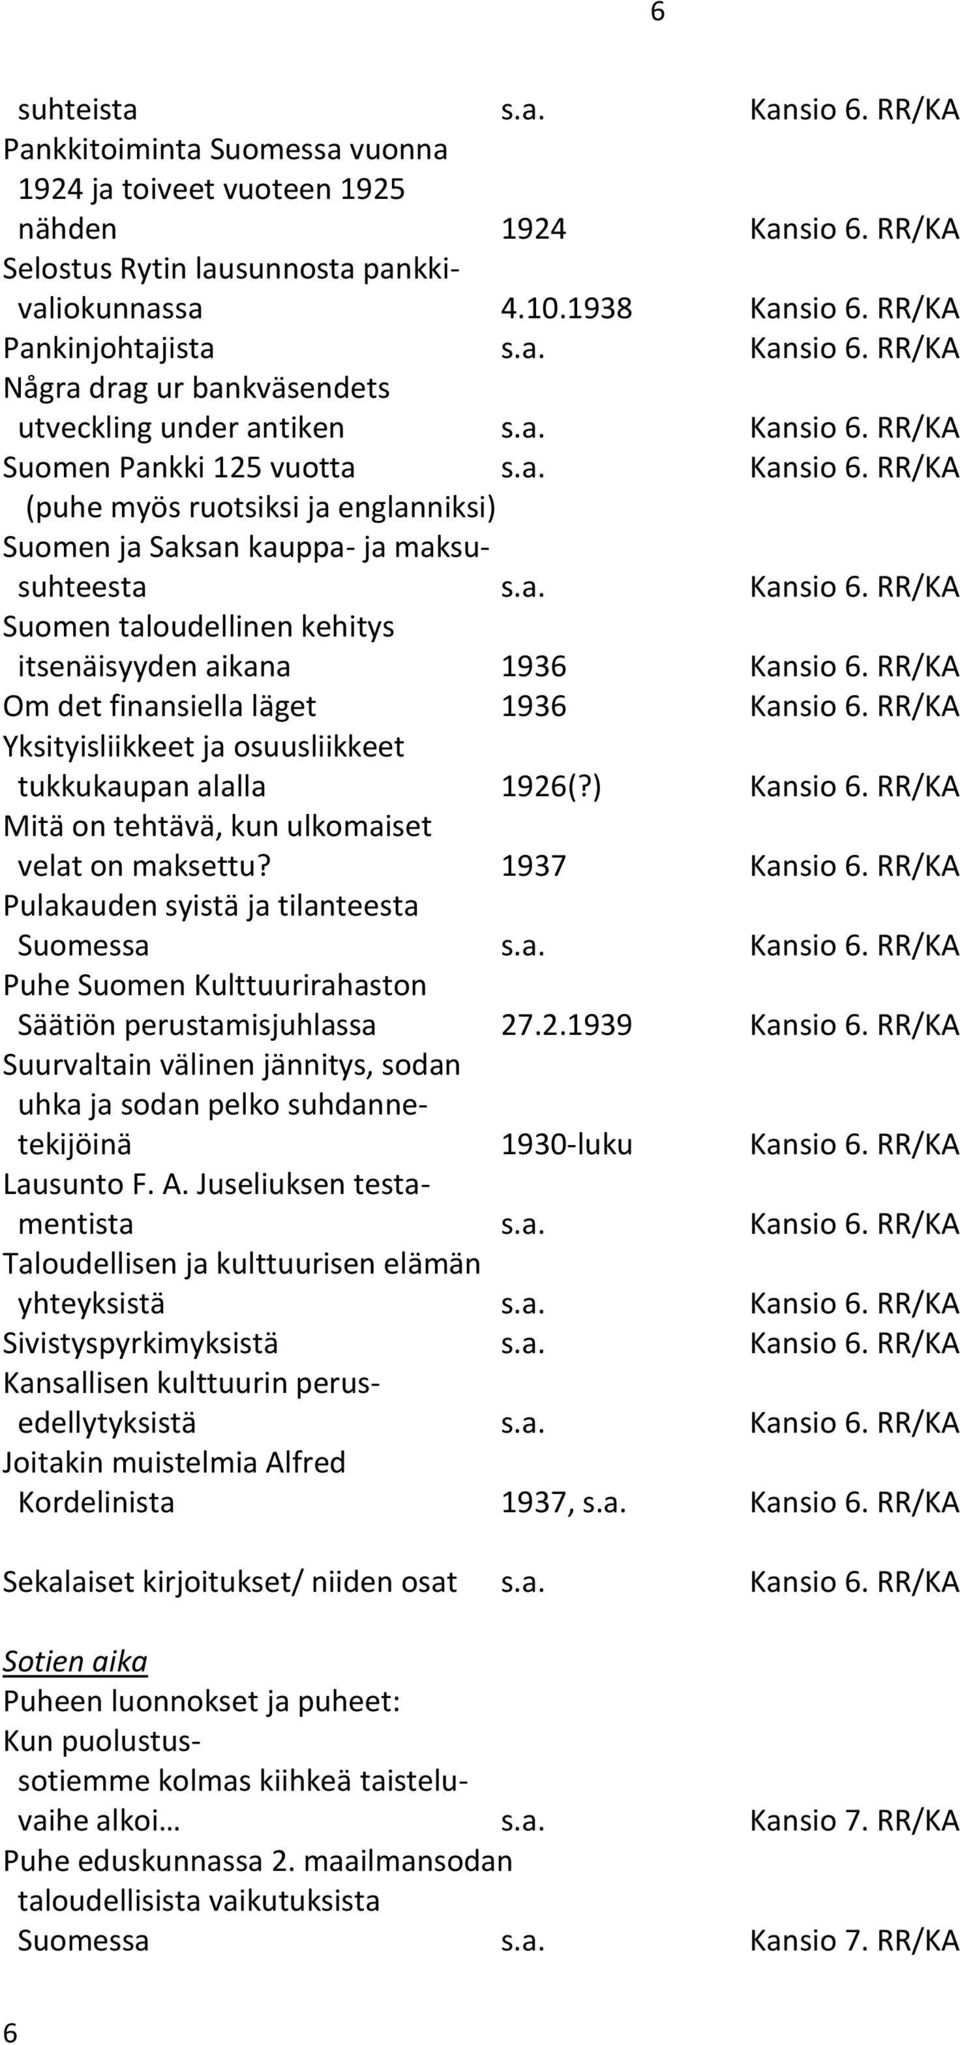 a. Kansio 6. RR/KA Suomen taloudellinen kehitys itsenäisyyden aikana 1936 Kansio 6. RR/KA Om det finansiella läget 1936 Kansio 6. RR/KA Yksityisliikkeet ja osuusliikkeet tukkukaupan alalla 1926(?